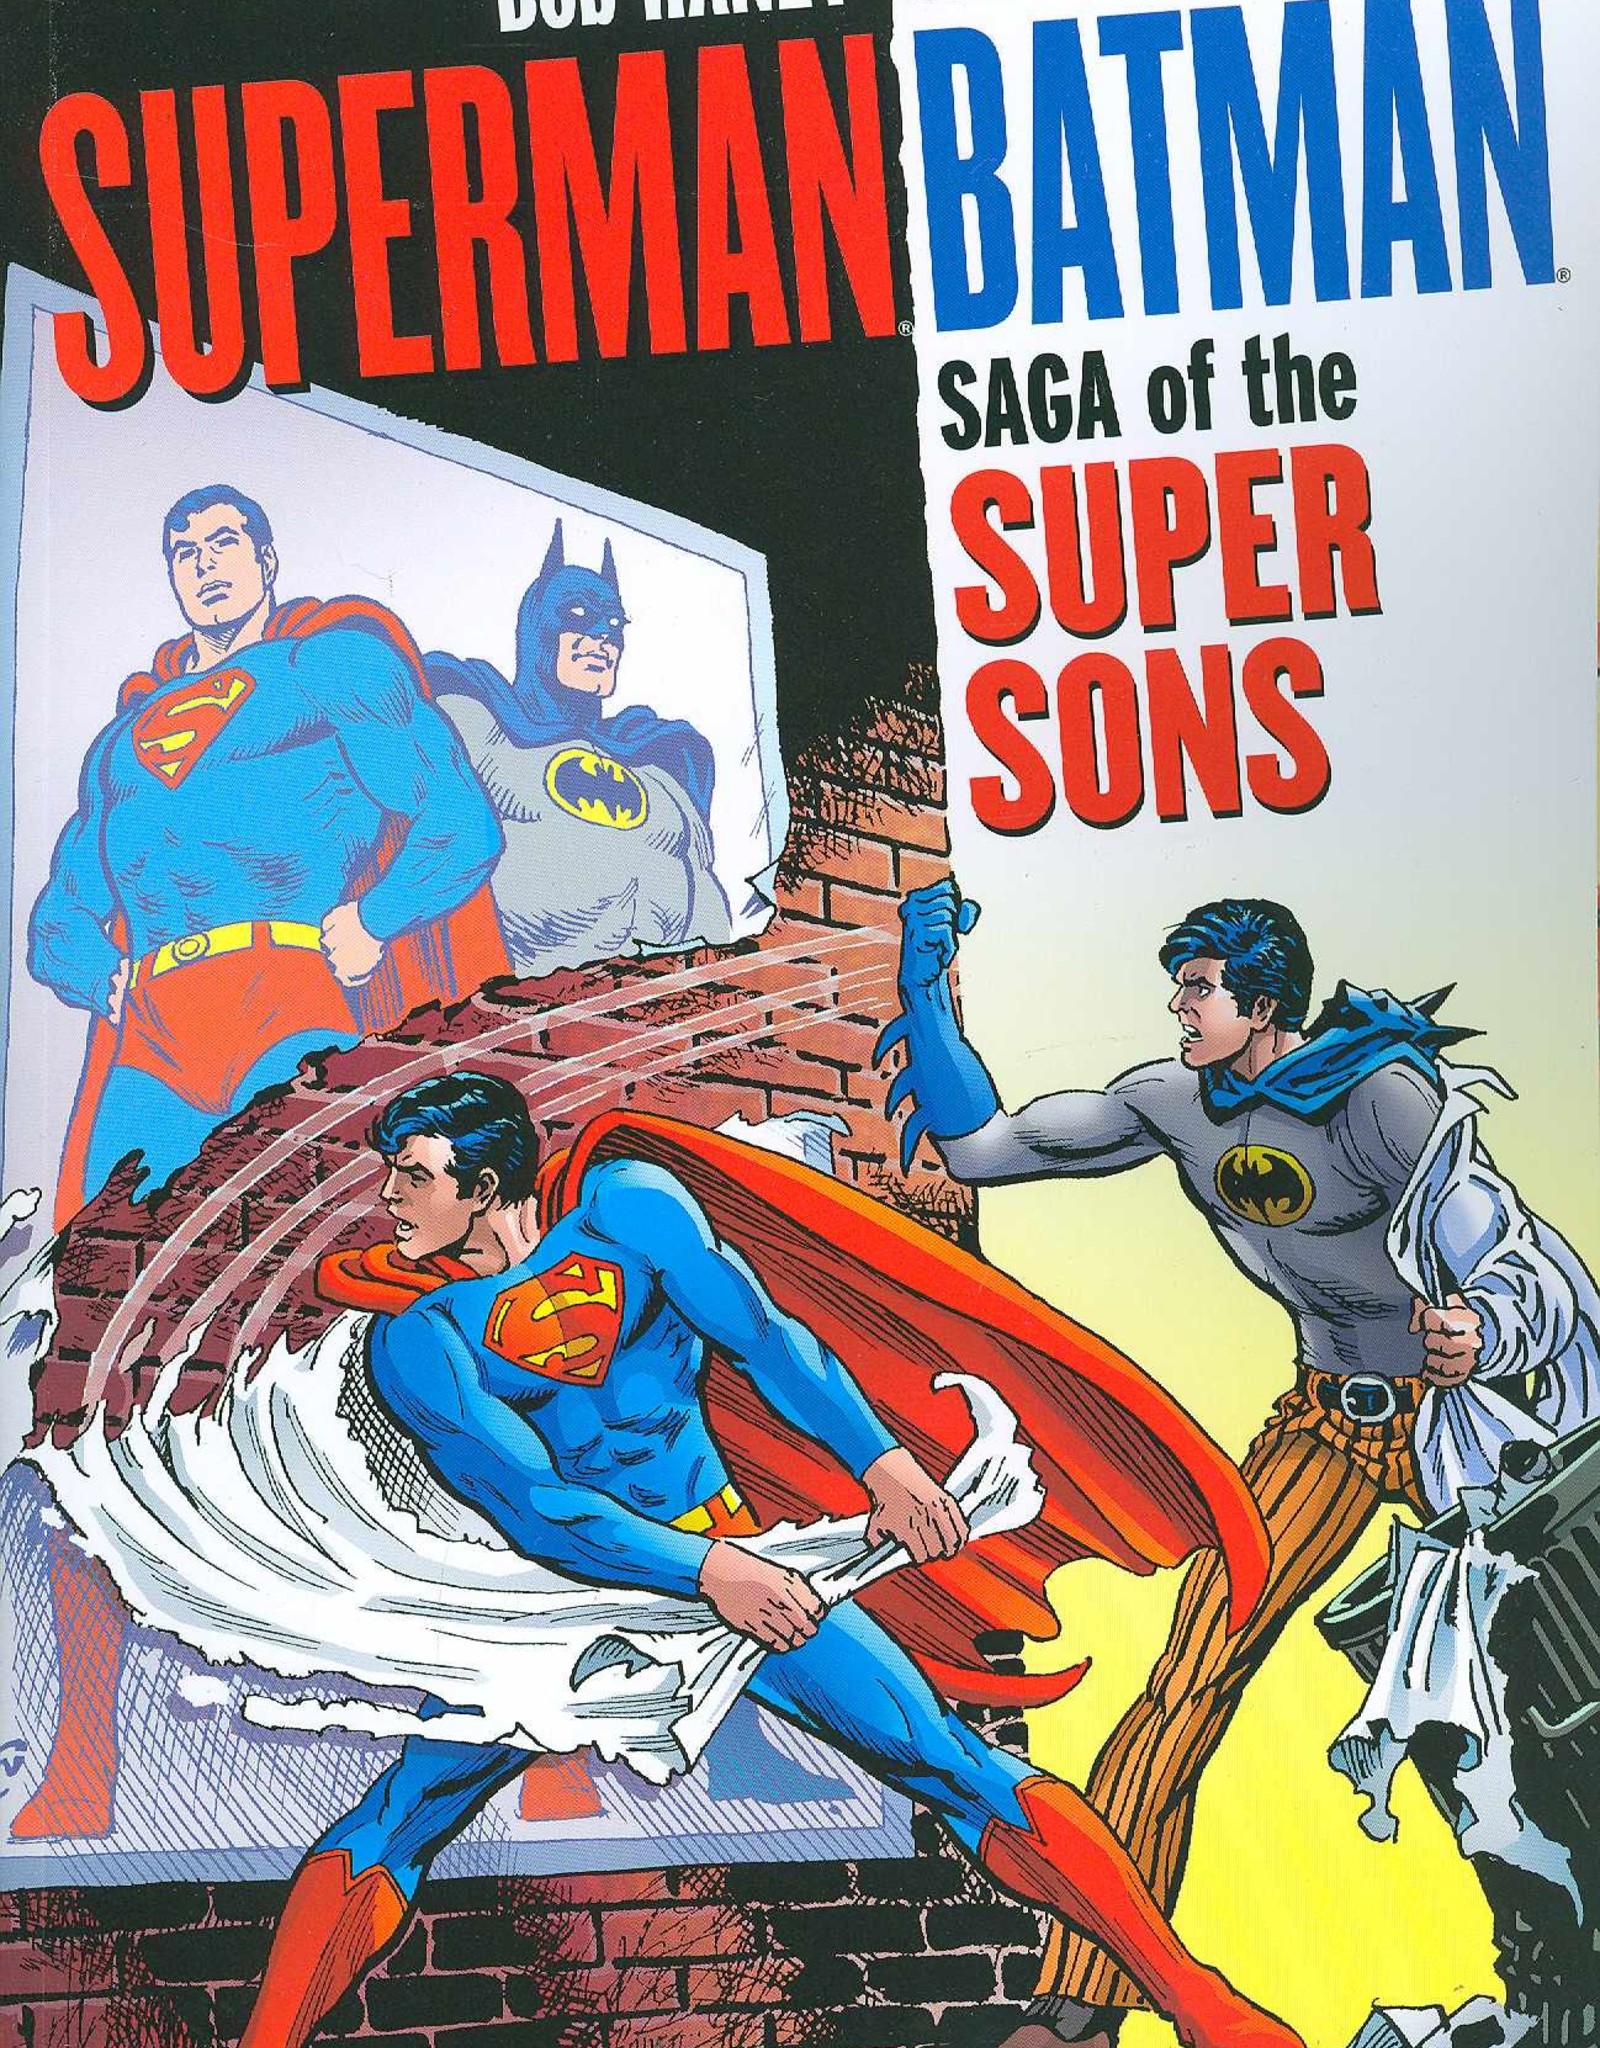 Superman Batman Saga of the Super Sons TP - Zia Comics